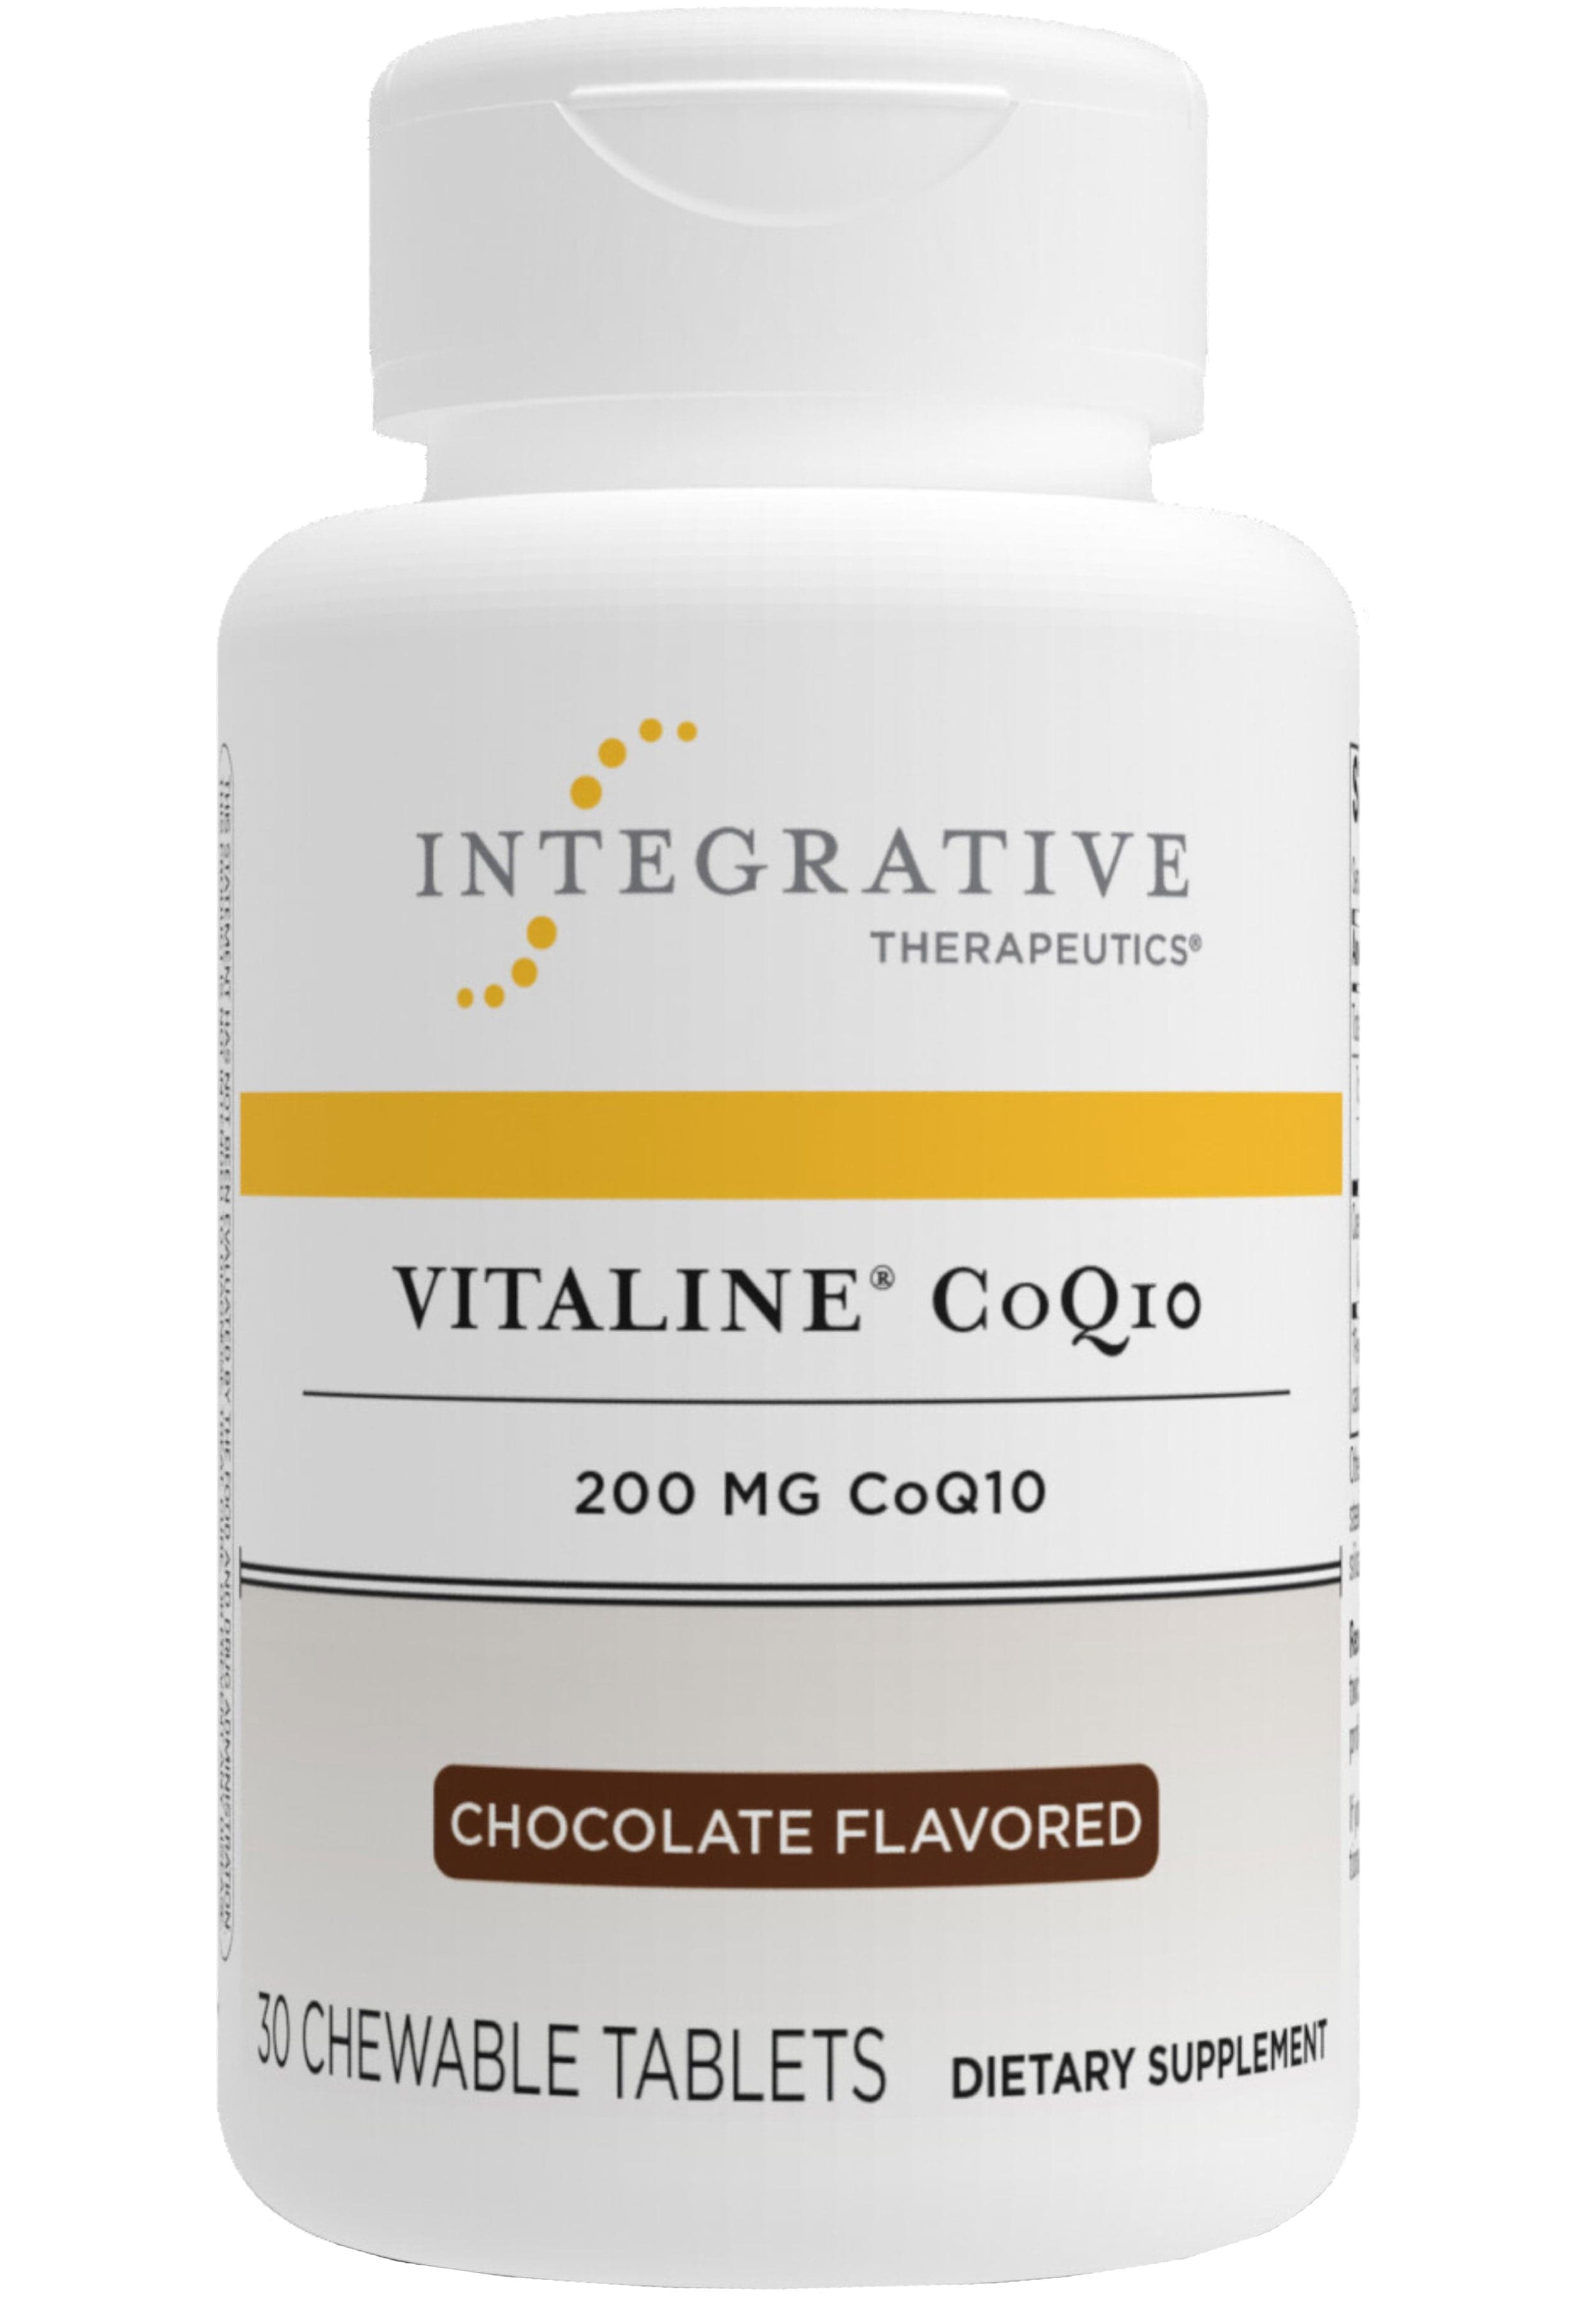 Integrative Therapeutics Vitaline CoQ10